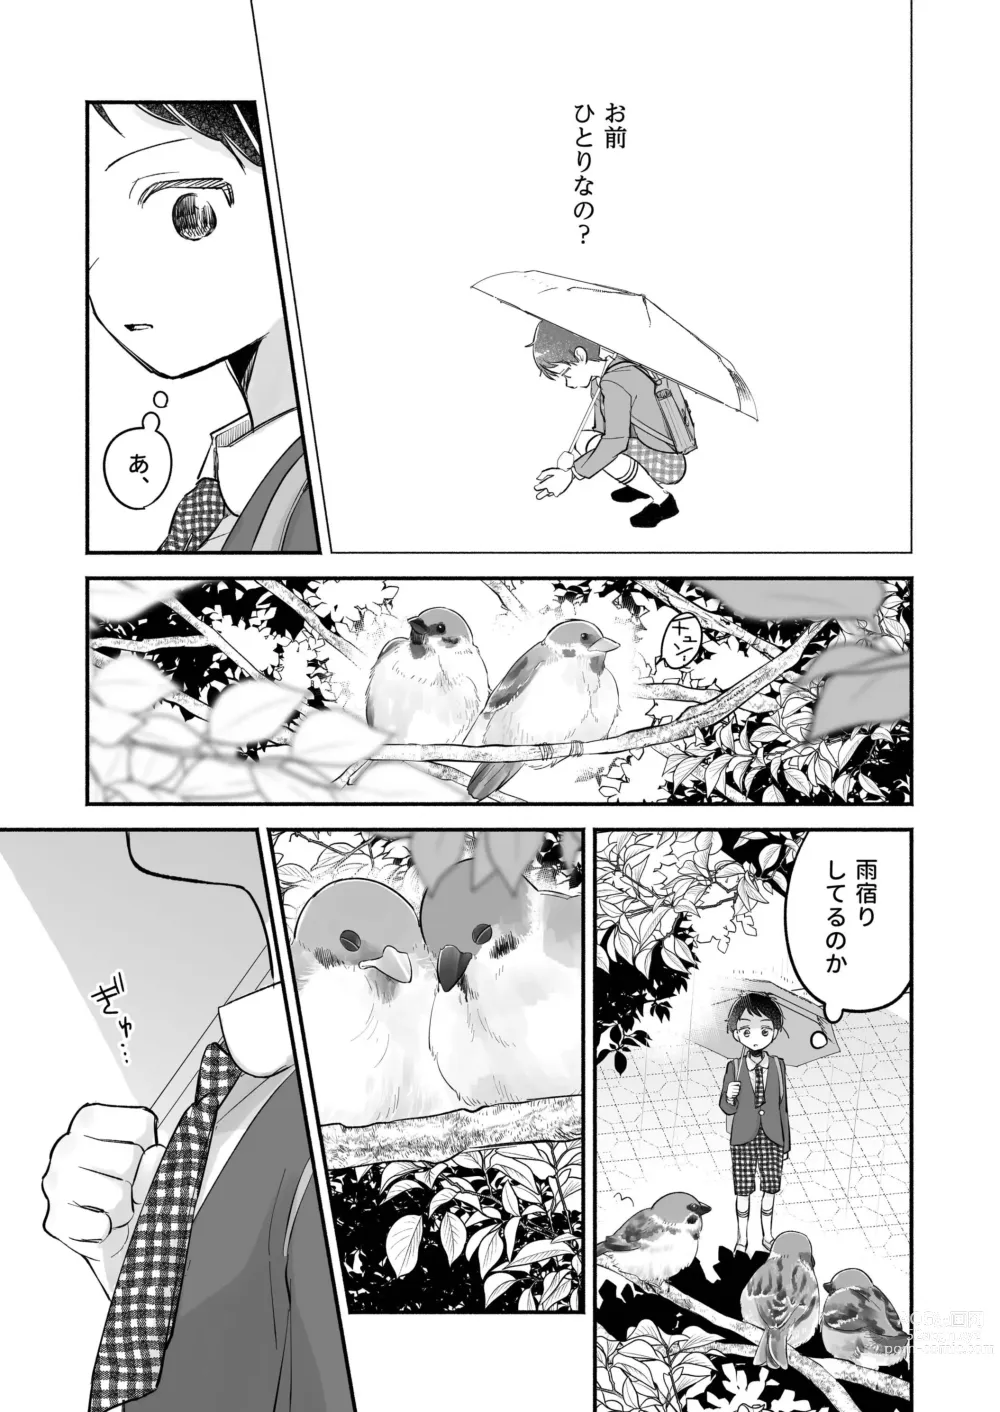 Page 17 of doujinshi Riku to Fuu Akachan Dekireba Kazoku ni Nareru no ka na